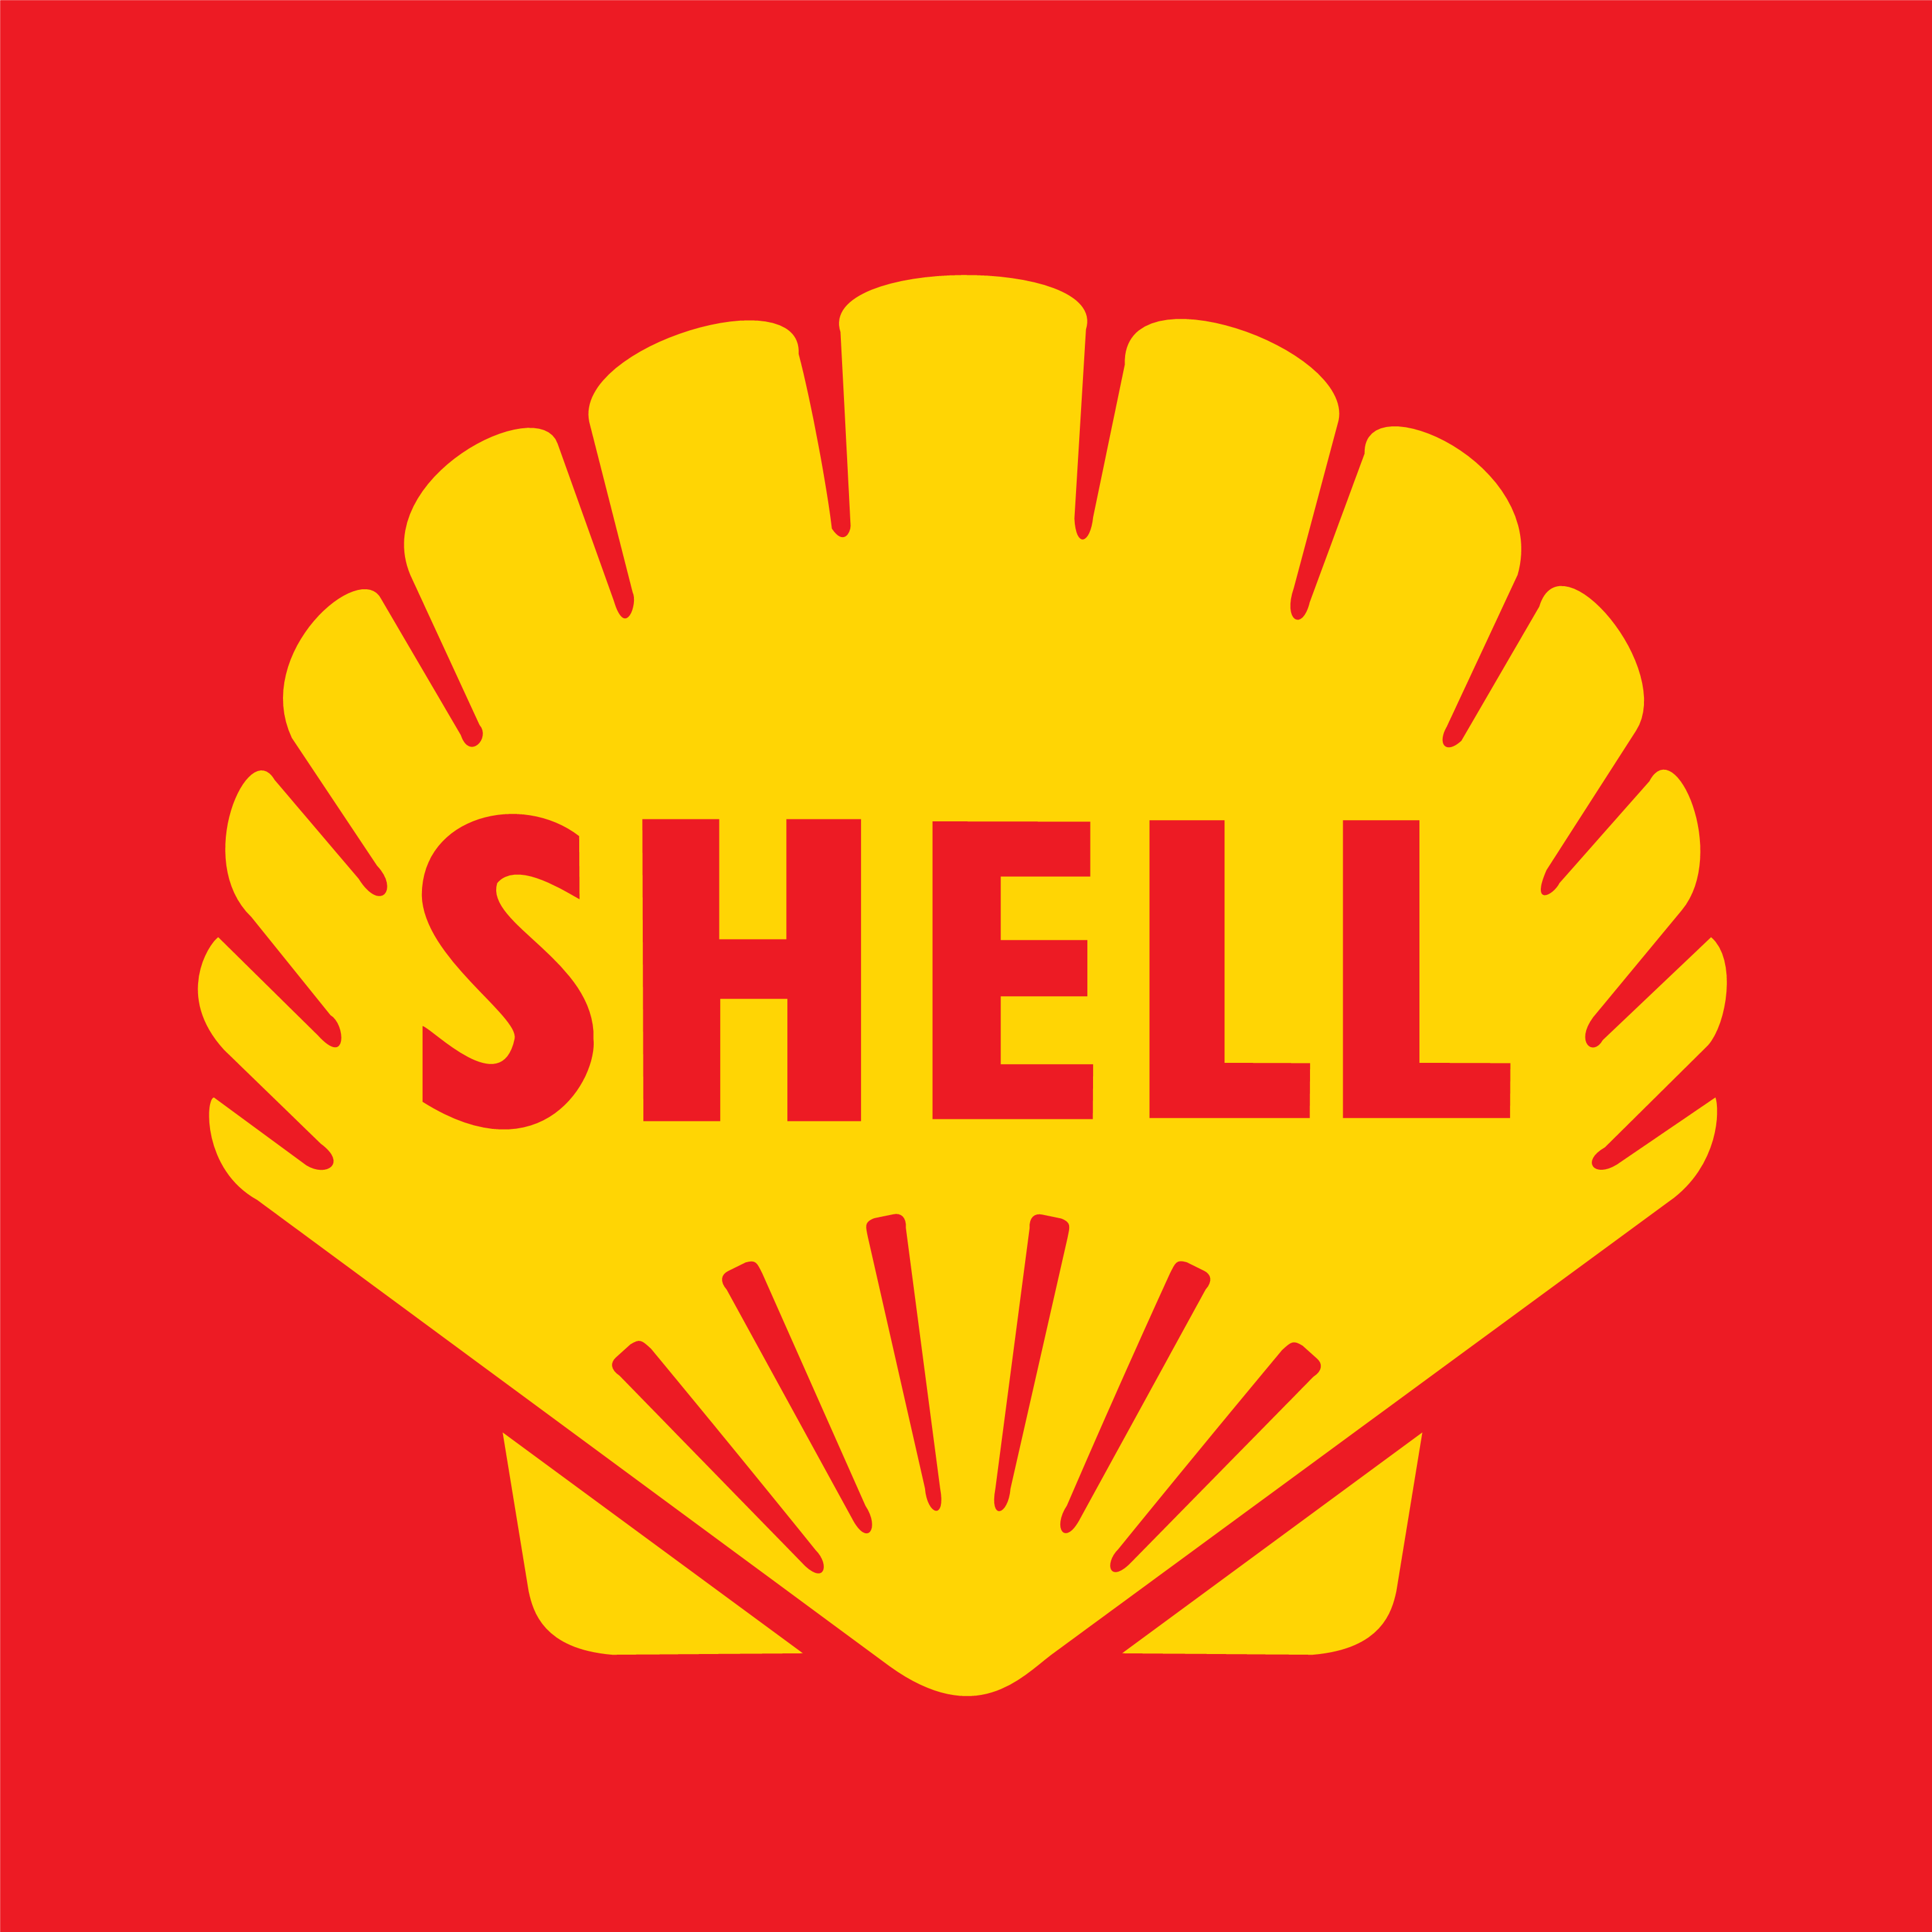 Shell Oil Logo - Shell: The evolution of a logo